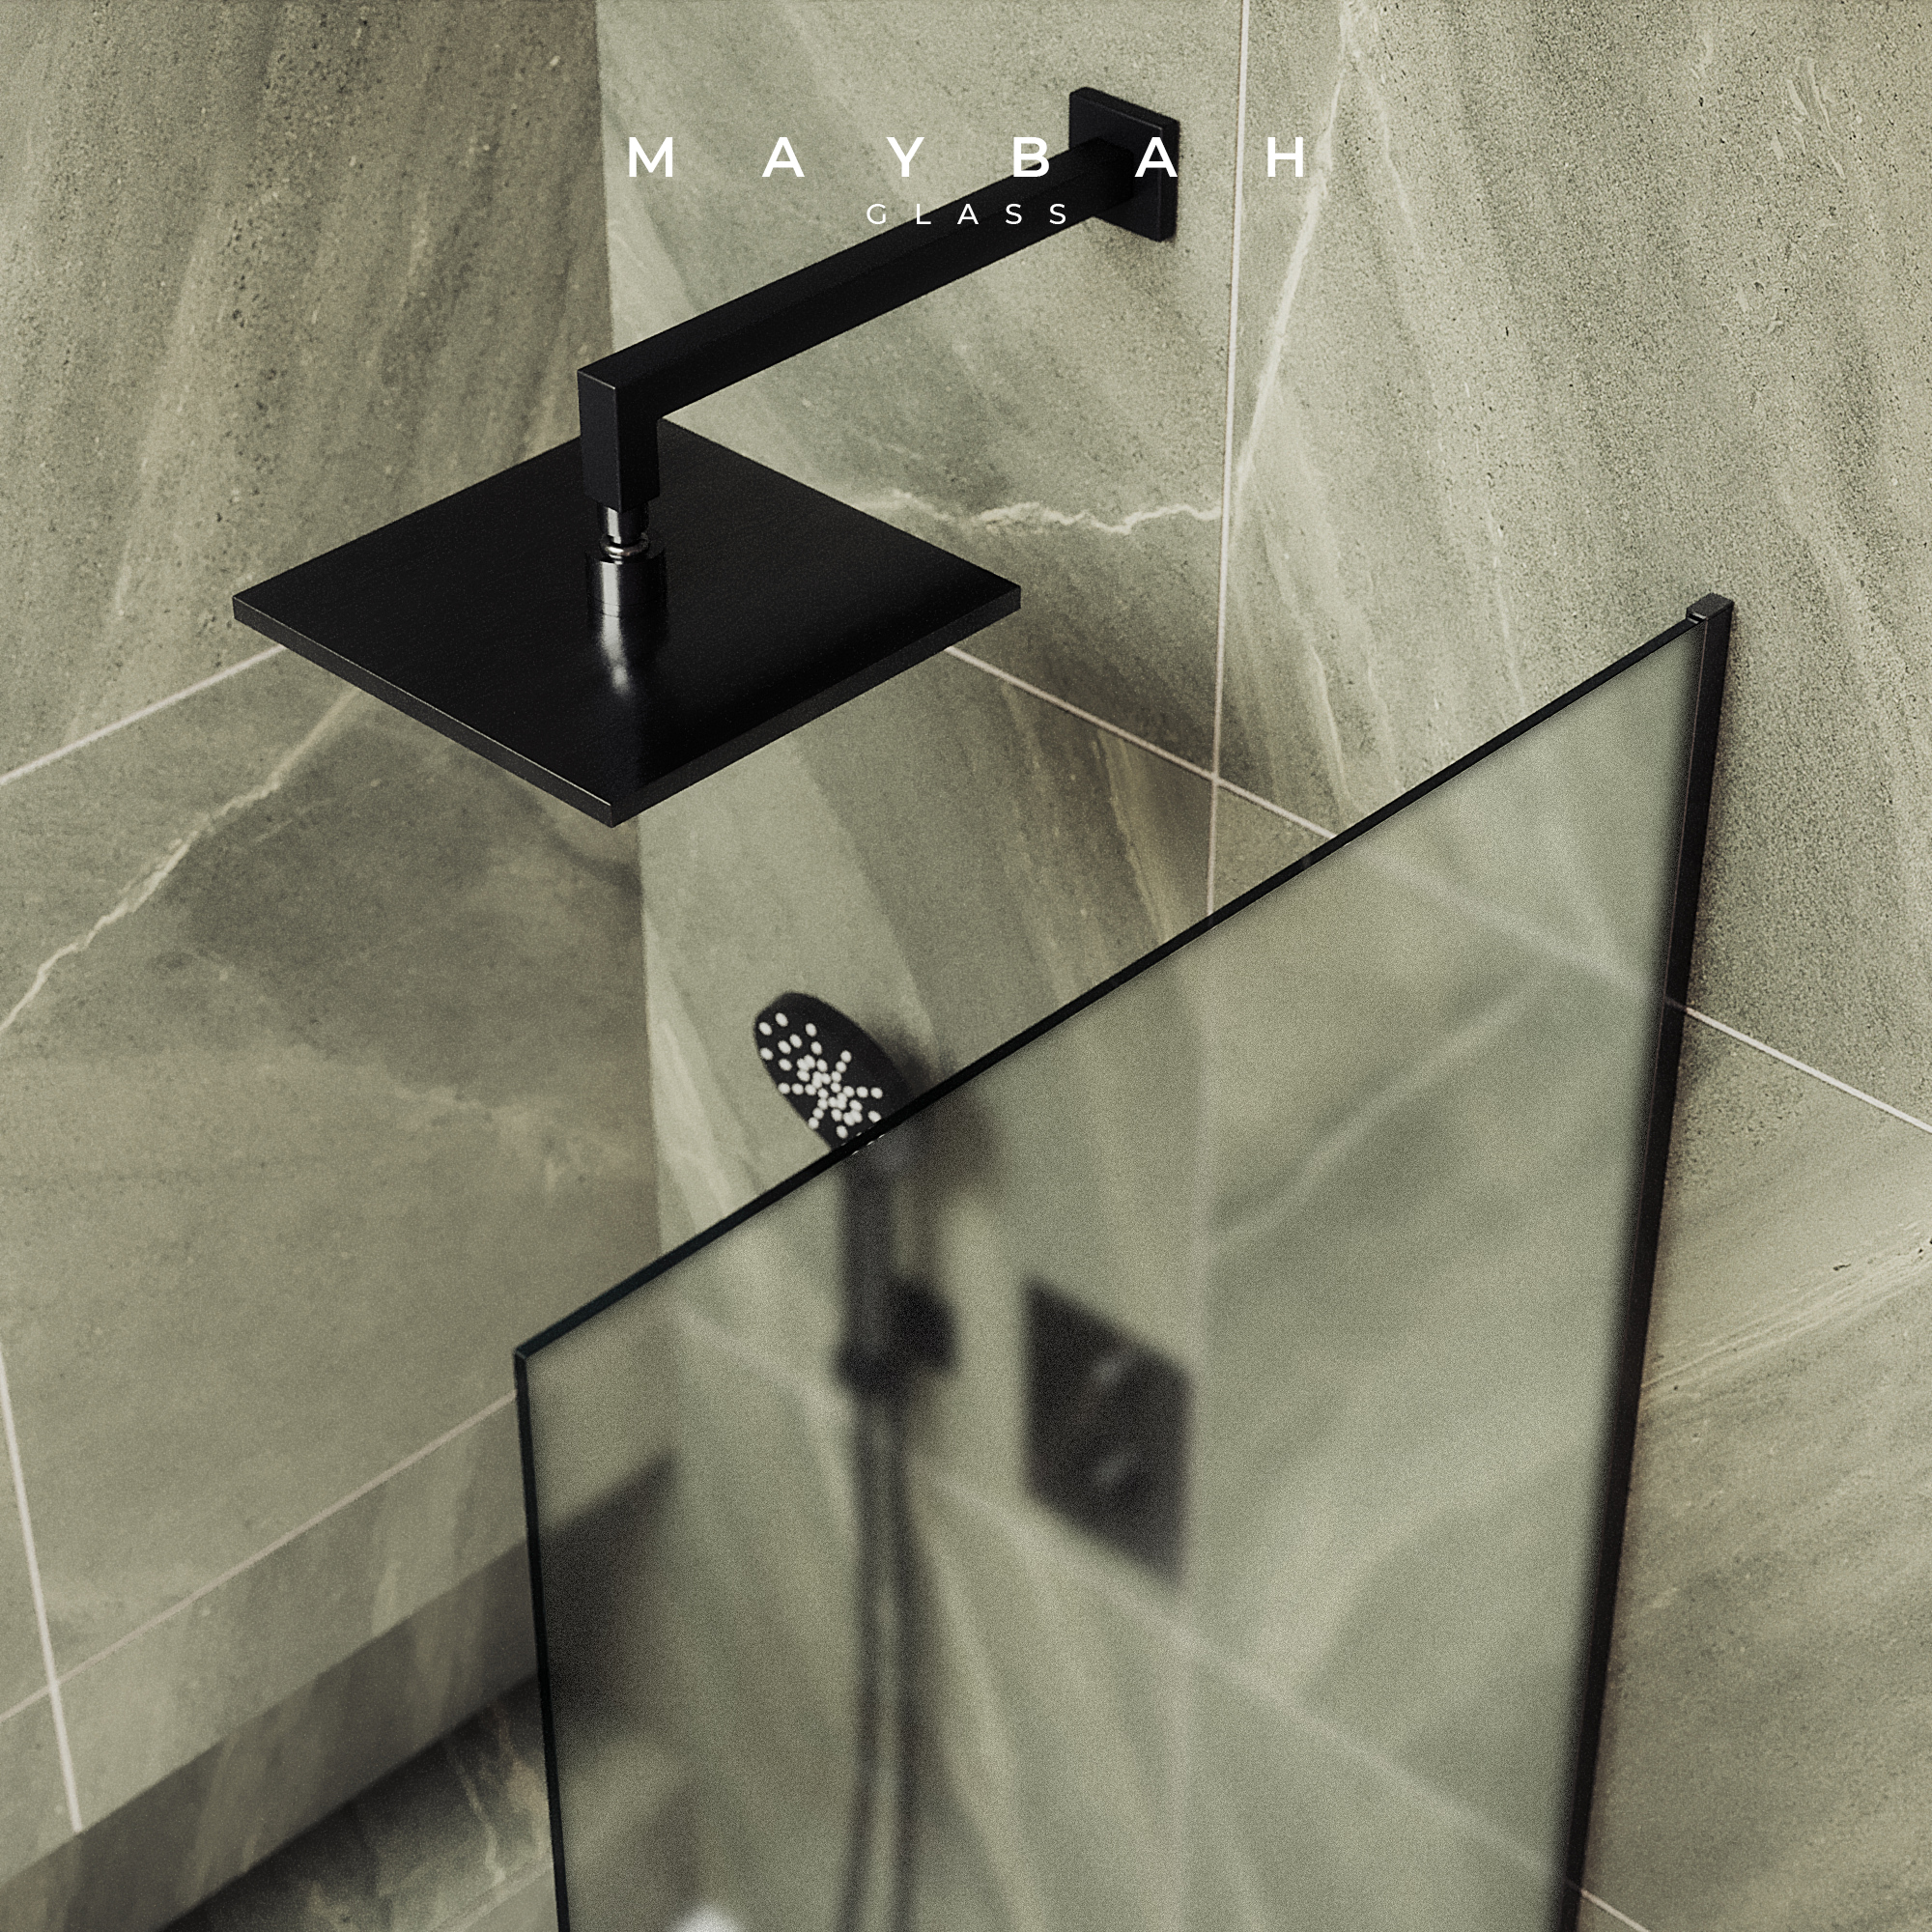 Шторка для ванны MaybahGlass 40х140 MGV-62-5у стекло прозрачное, профиль матовый хром - фото 2